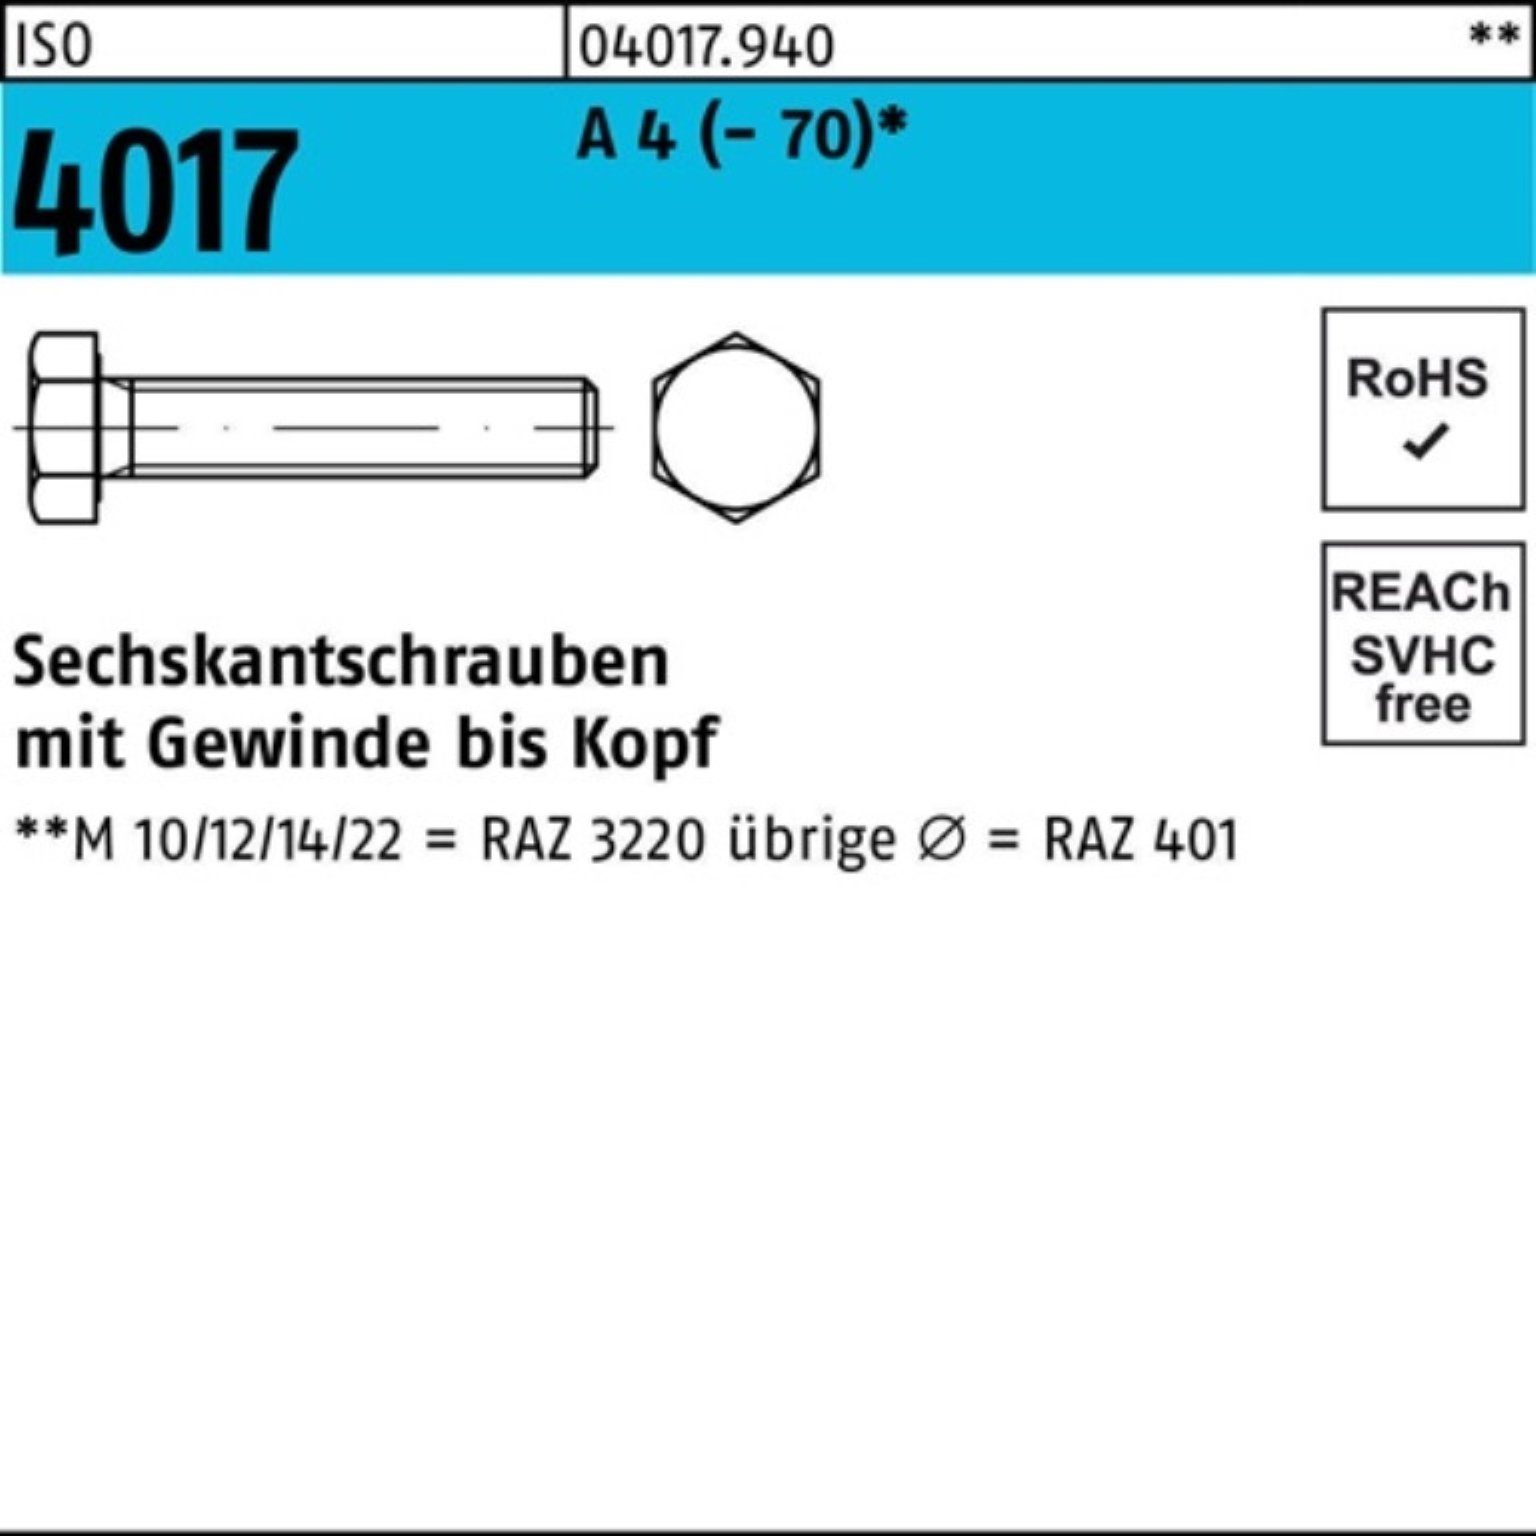 Bufab Sechskantschraube 100er Pack Sechskantschraube ISO 4017 VG M24x 75 A 4 (70) 1 Stück I